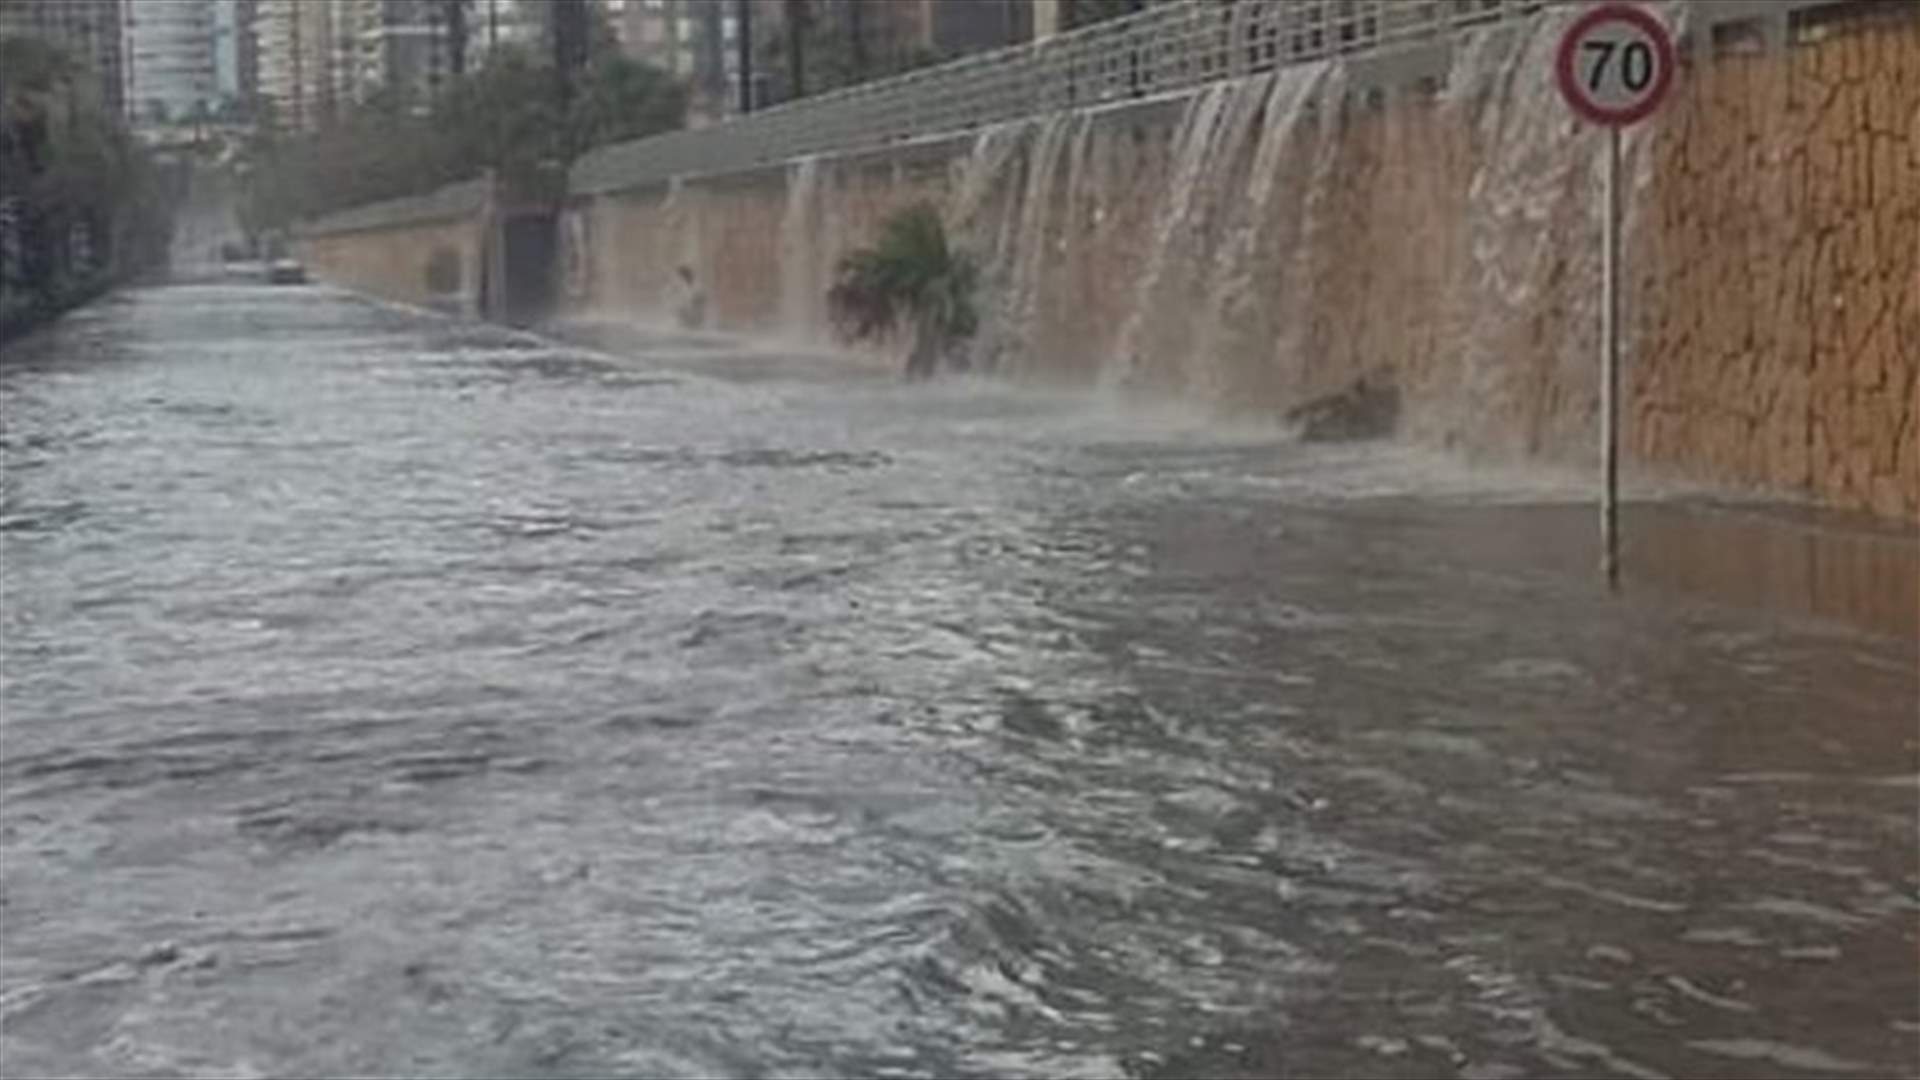 بعد الفيضانات في بيروت اليوم.. تويني يتقدم بإخبار لدى النيابة العامة التمييزية